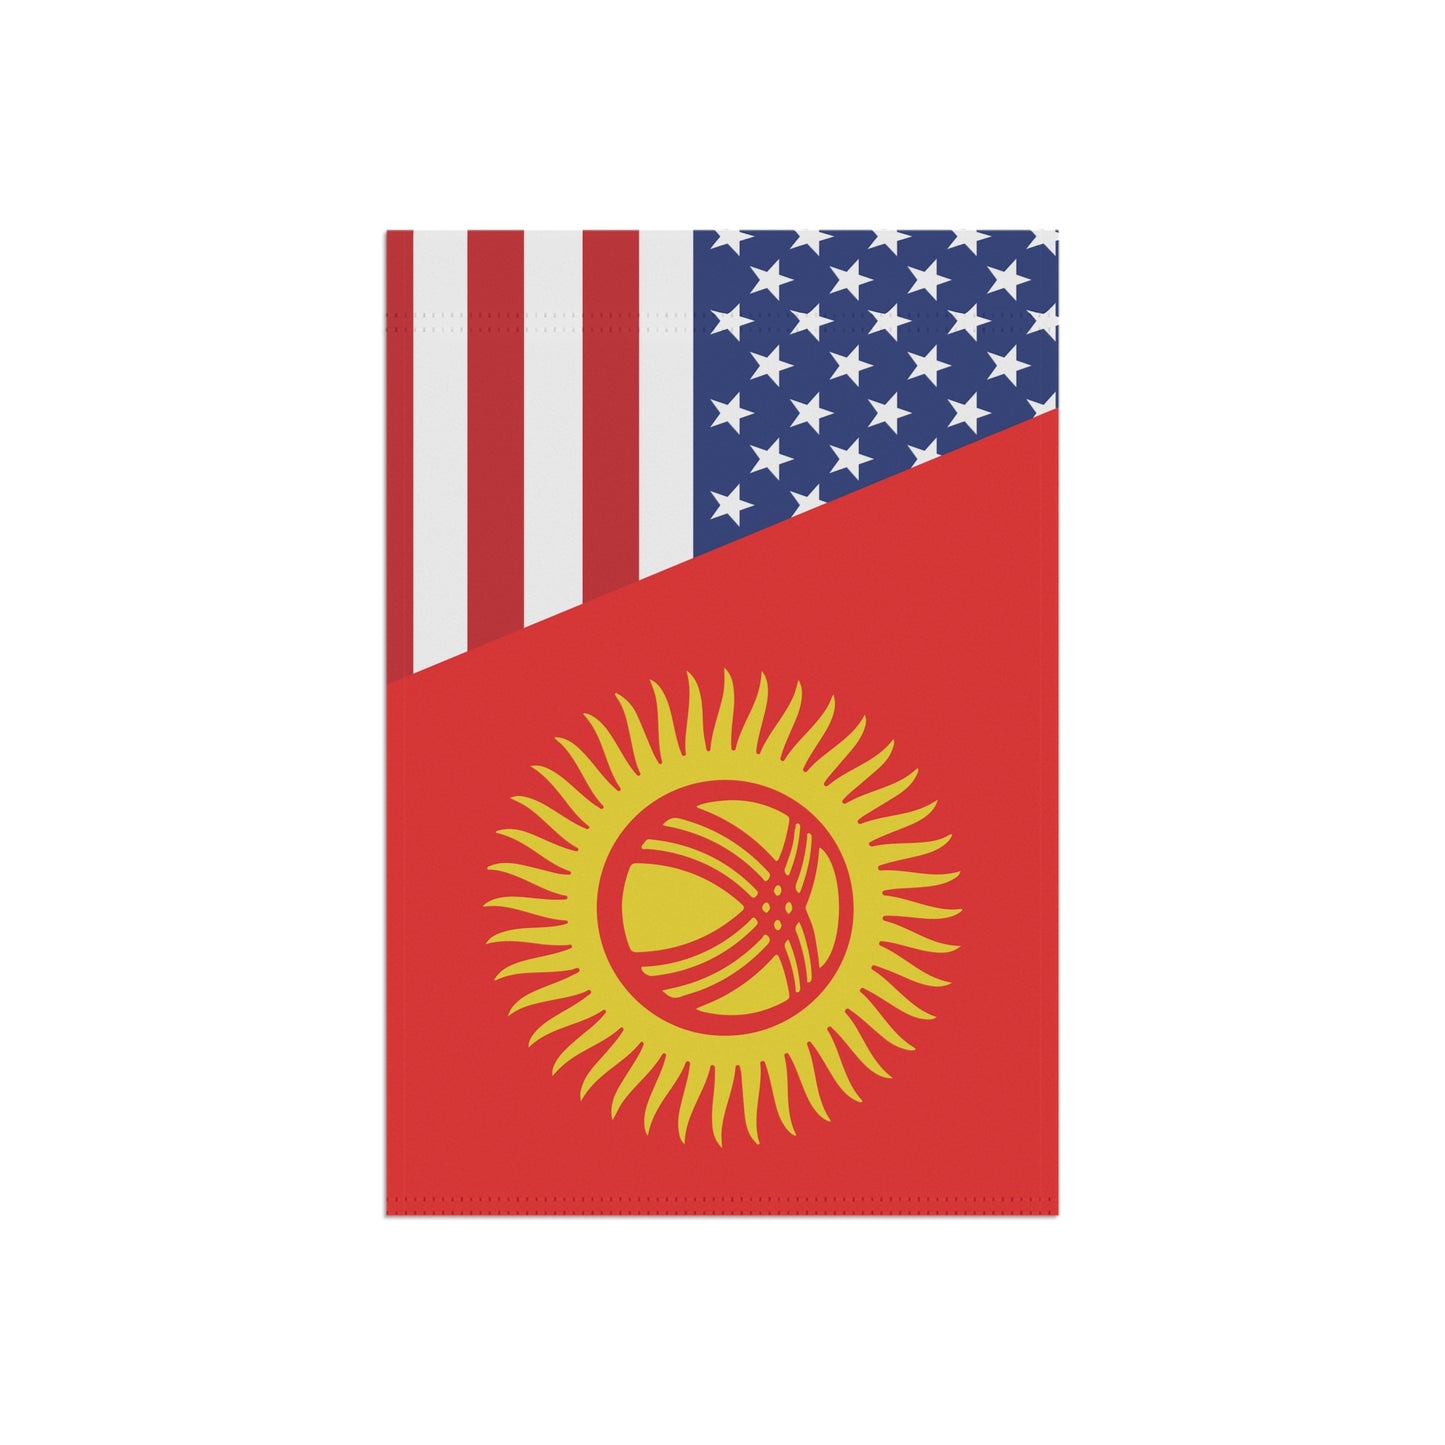 Kyrgyz American Flag Garden & House Banner